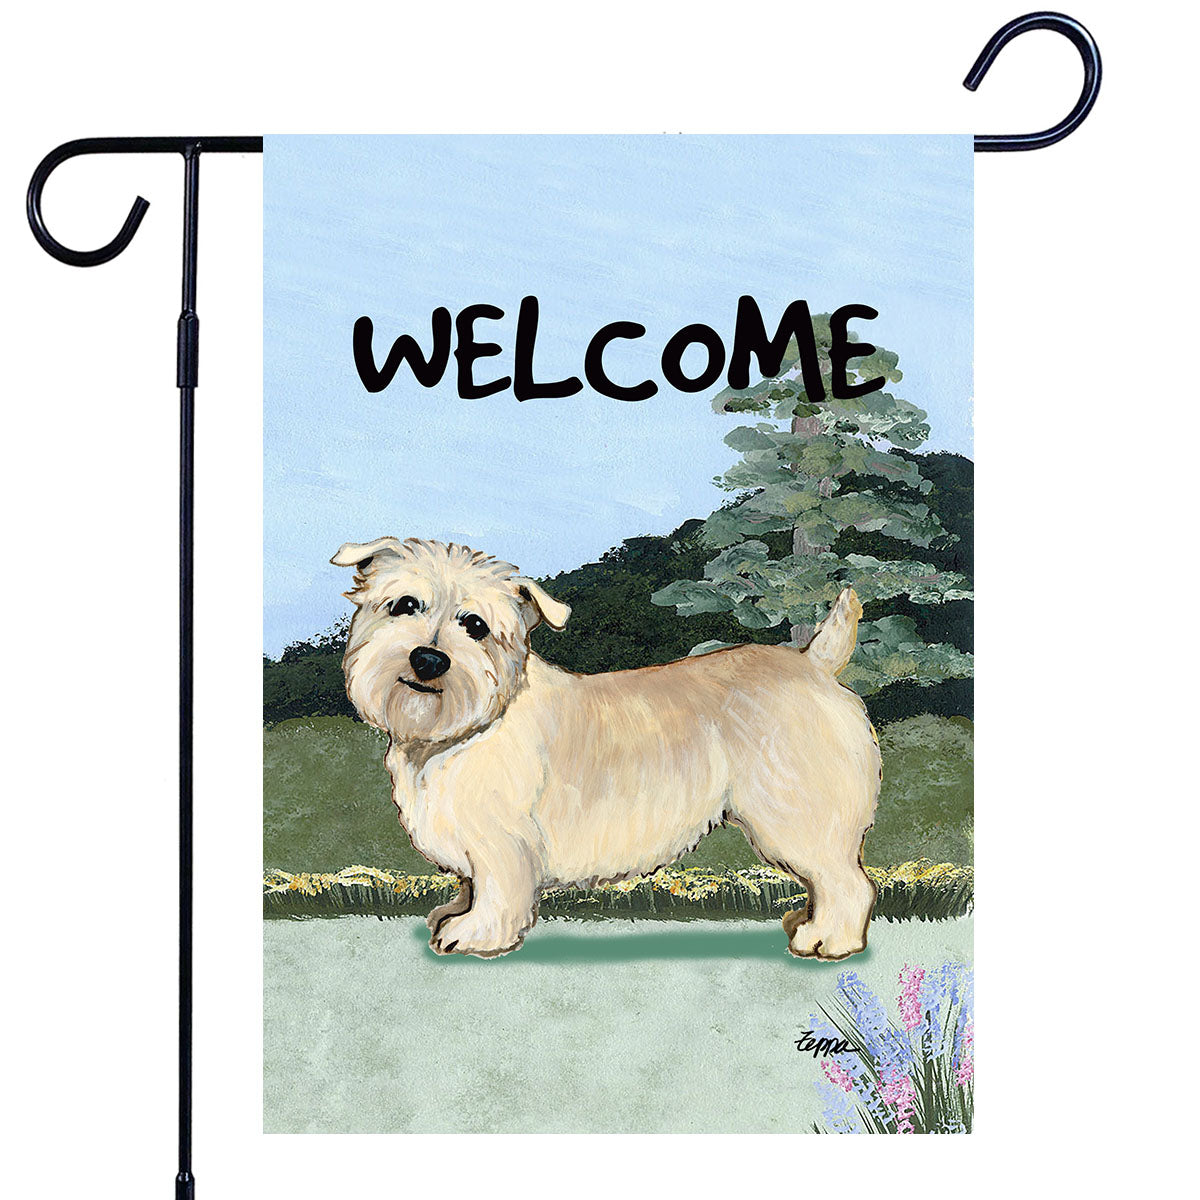 Glen of Imaal Terrier Scenic Garden Flag